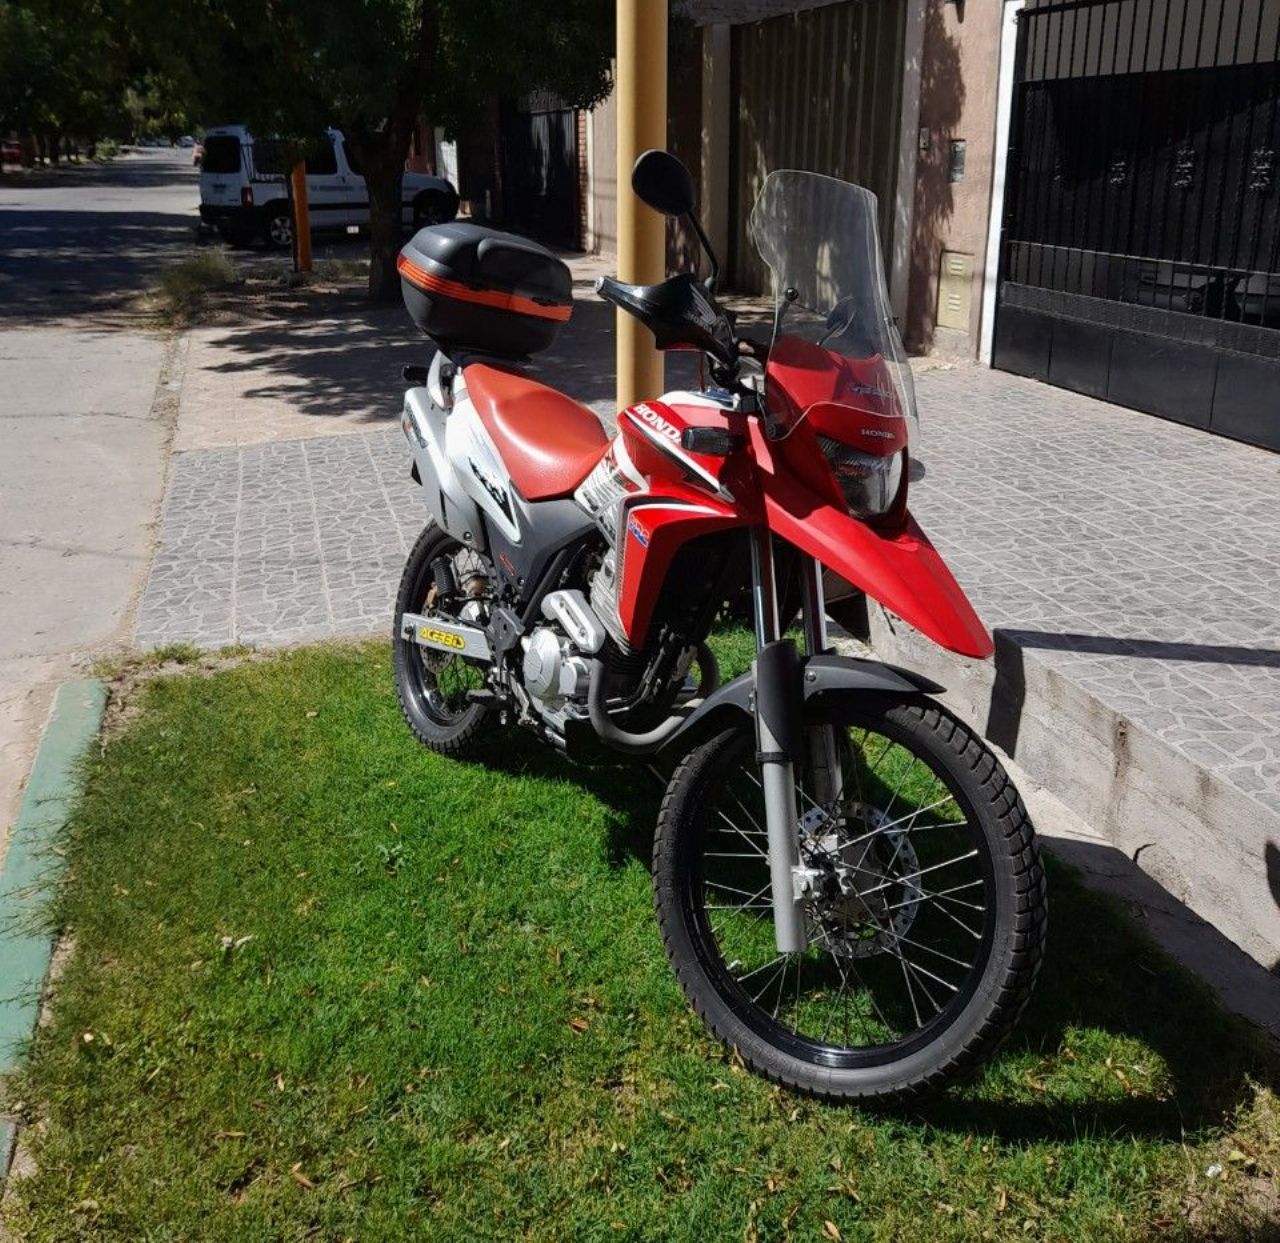 Honda XRE Usada en Mendoza, deRuedas